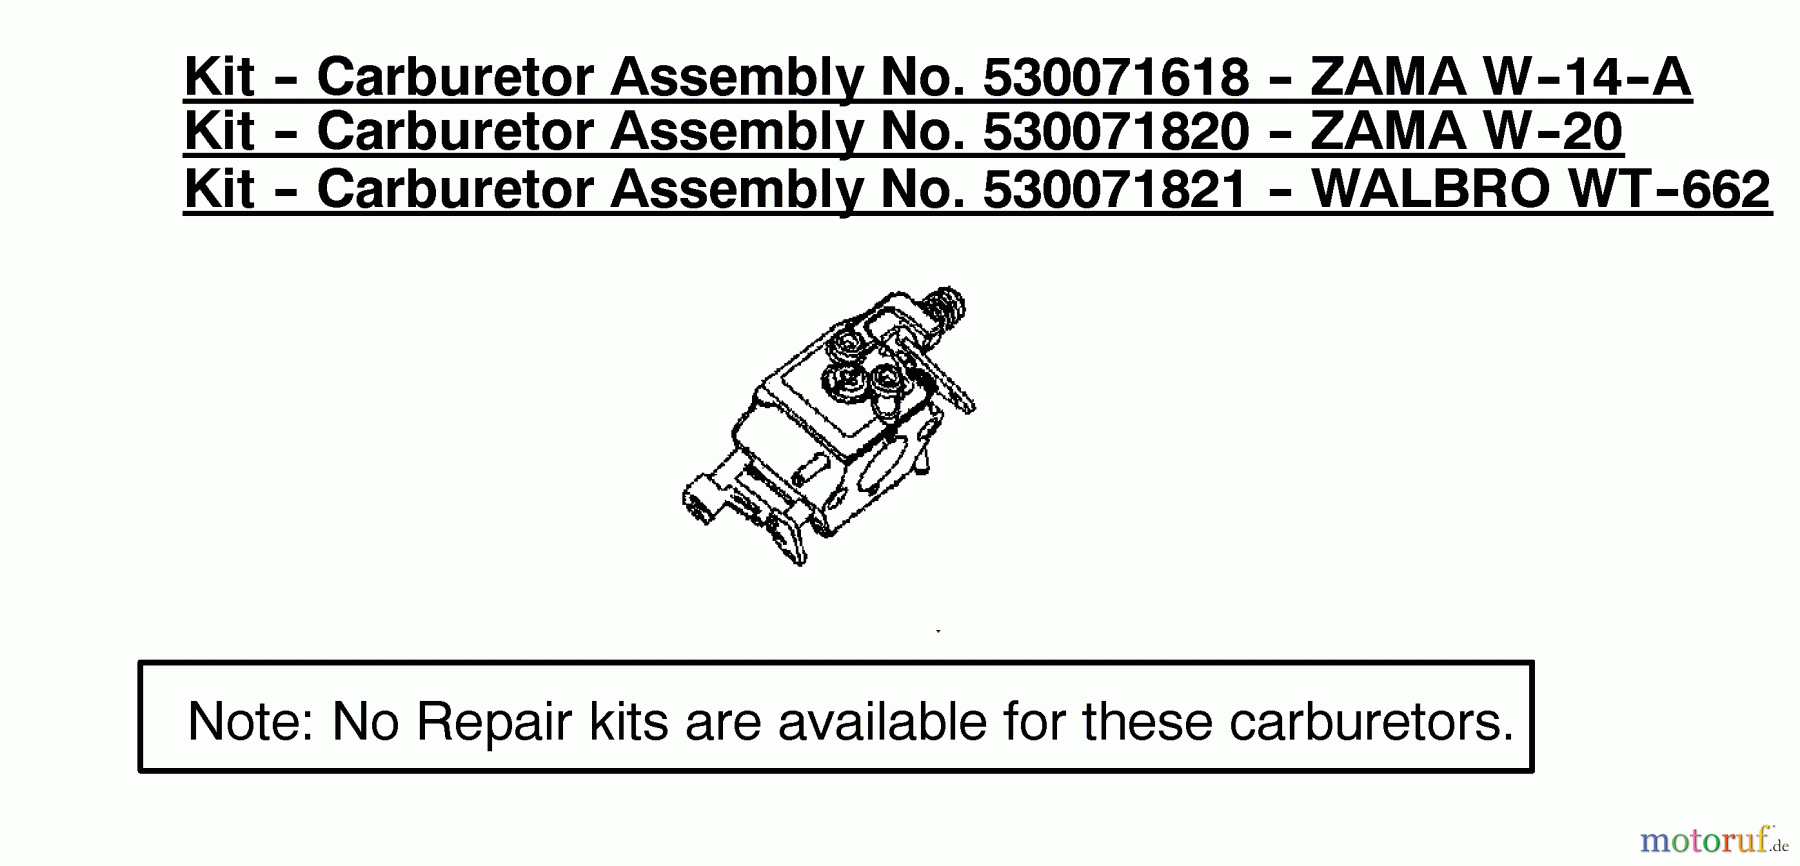  Poulan / Weed Eater Motorsägen 1975LE (Type 1) - Poulan Woodshark Chainsaw Kit-Carburetor Assembly 530071618/530071820/53007182